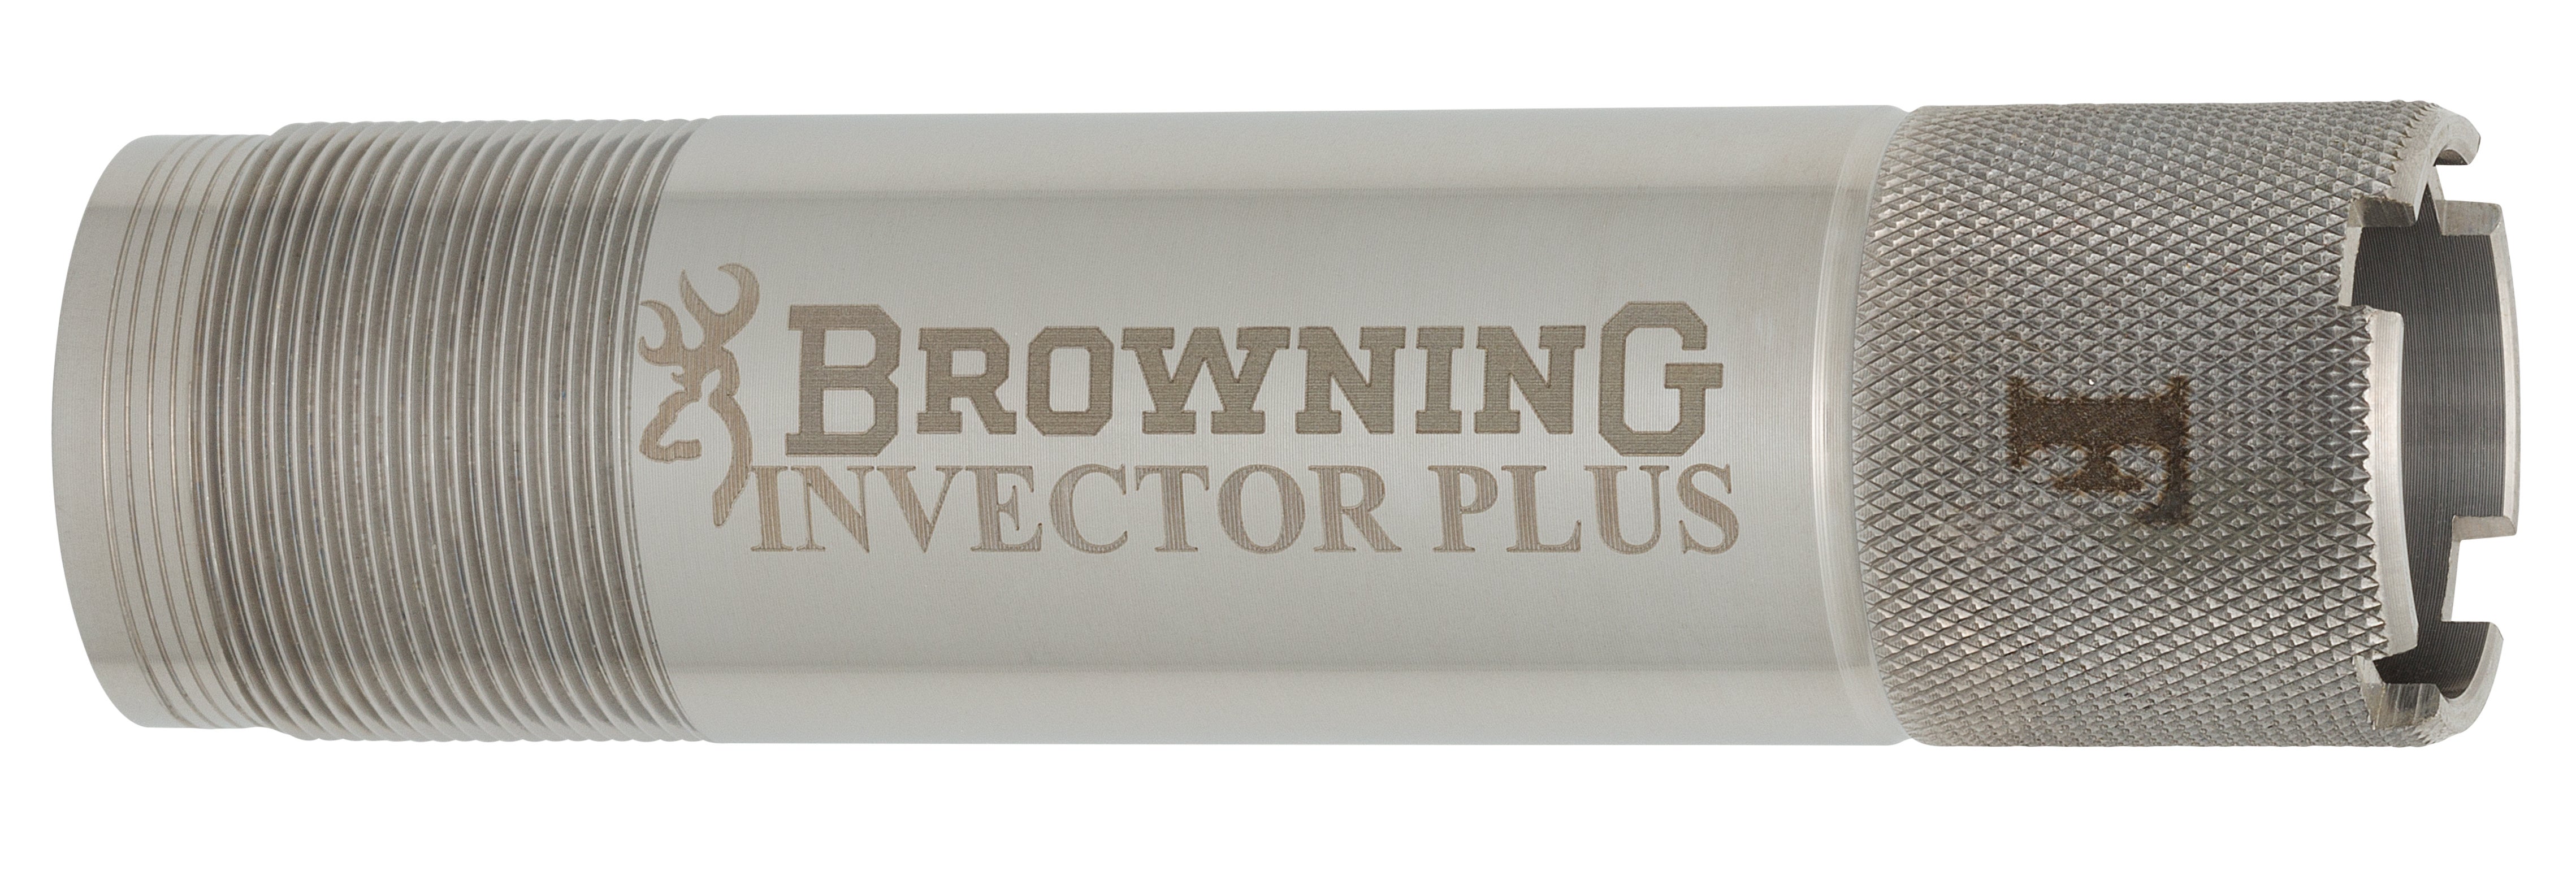 Invector Plus Shotgun Choke Tubes Browning